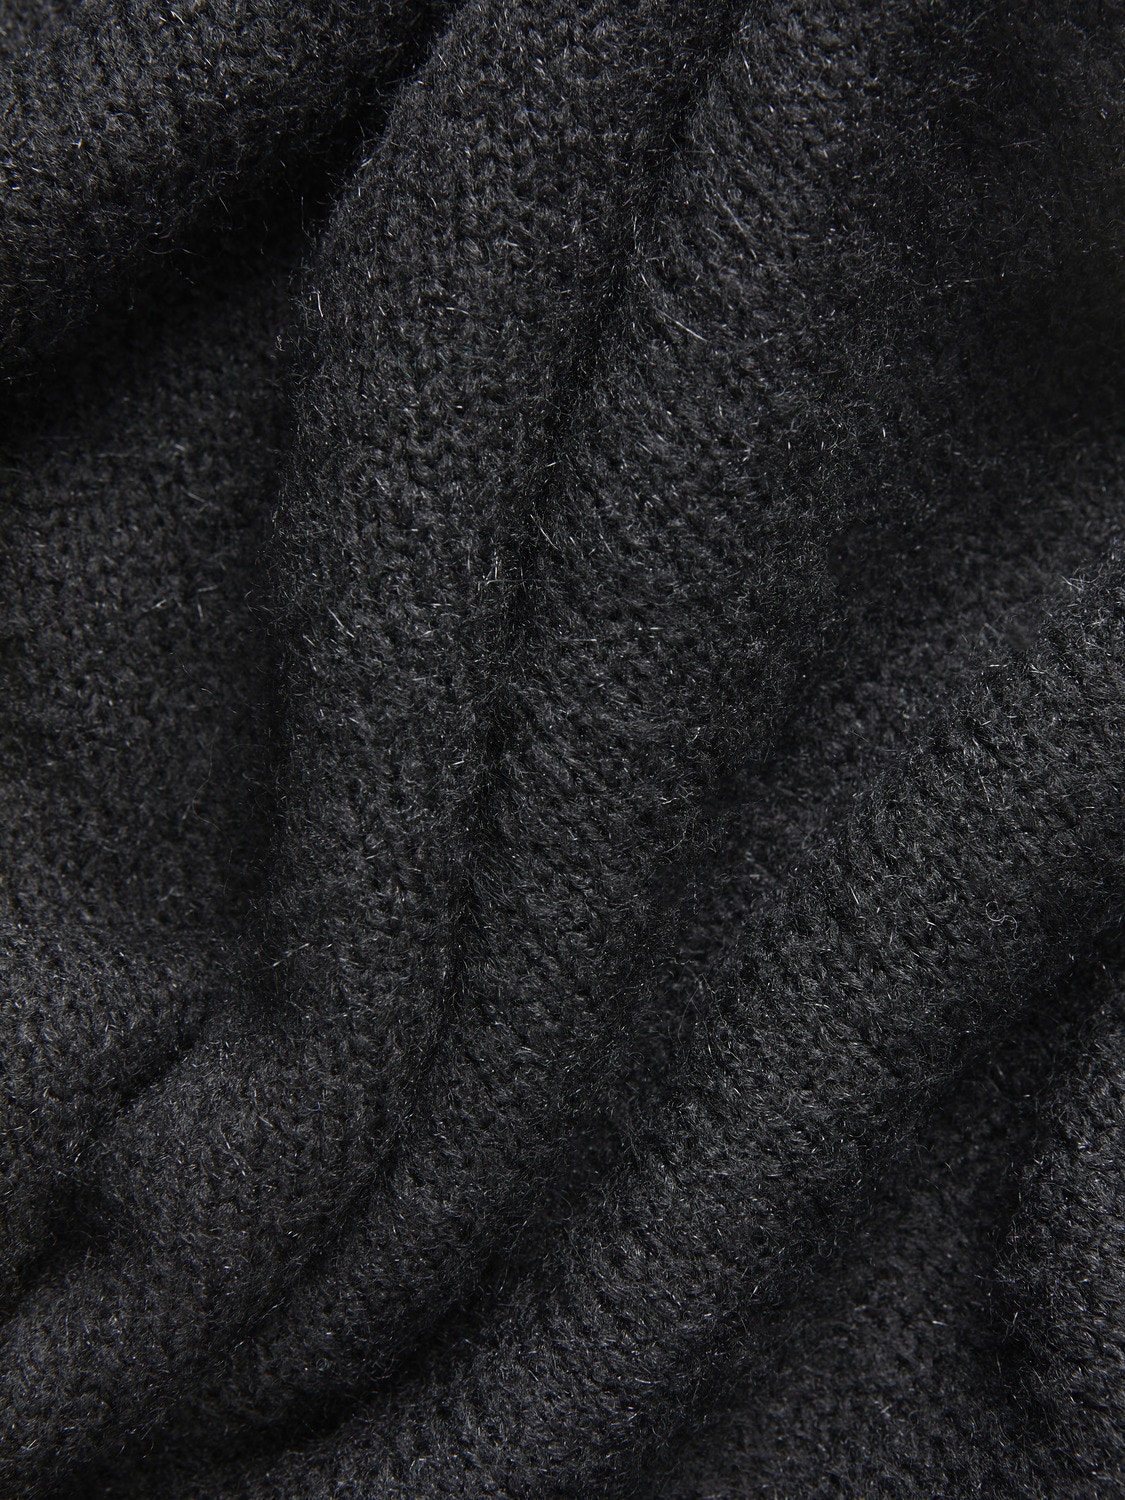 JJXX JXARIELLA Knitted Dress -Black - 12246957